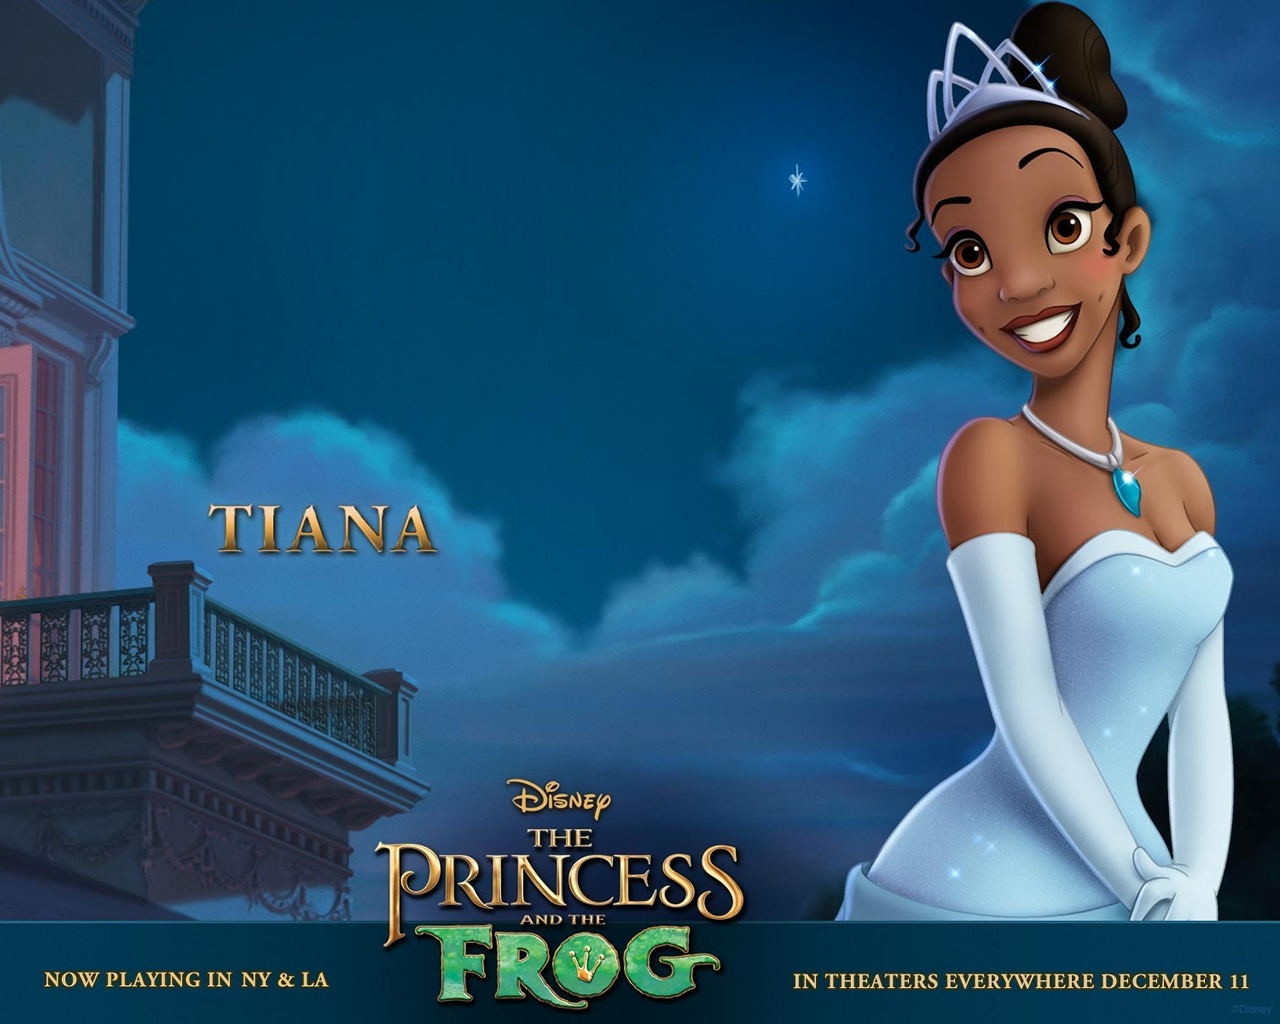 "The Princess and the Frog: Tiana" desktop wallpaper (1280 x 1024 pixels)